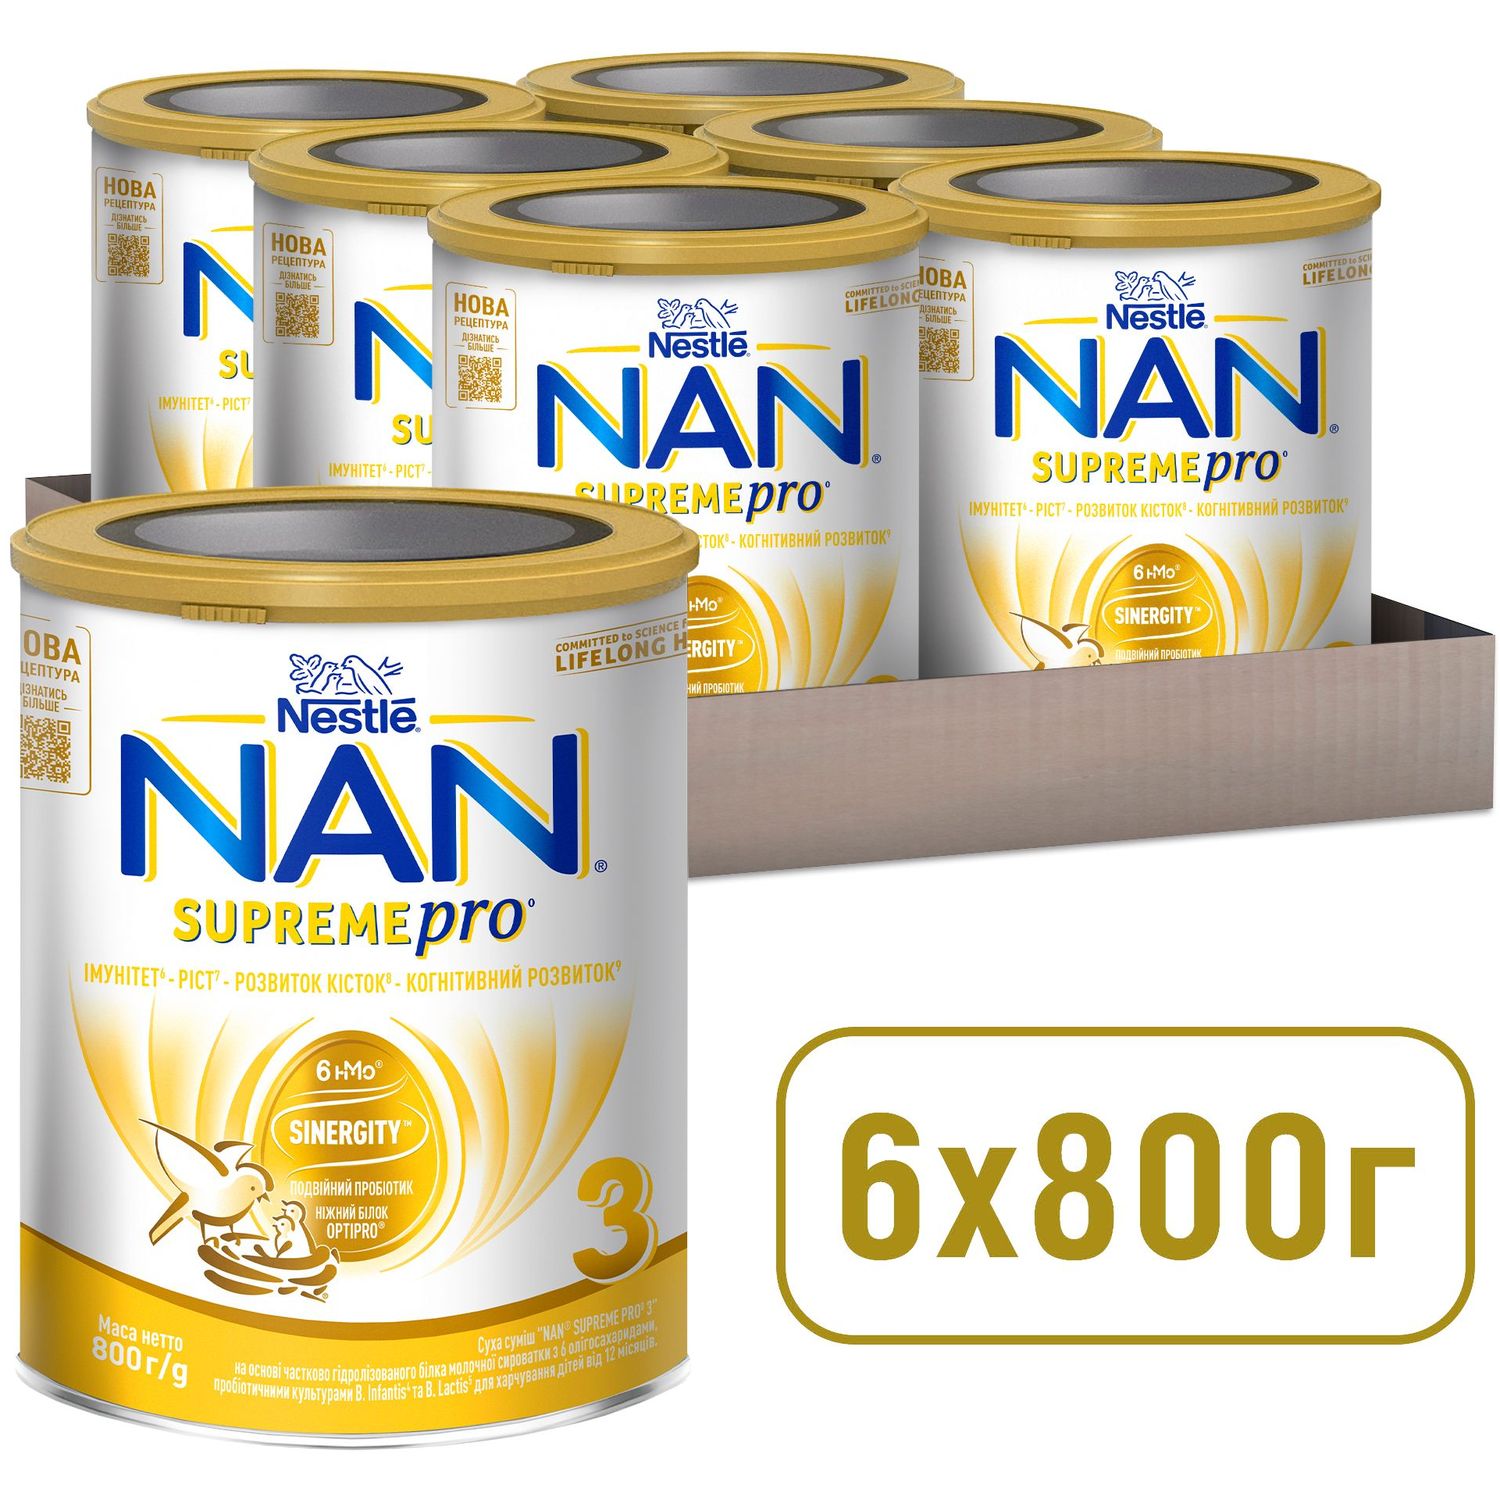 Суха суміш NAN 3 Supreme Pro з 6 олігосахаридами та подвійним пробіотиком для харчування дітей від 12 місяців 800 г - фото 10